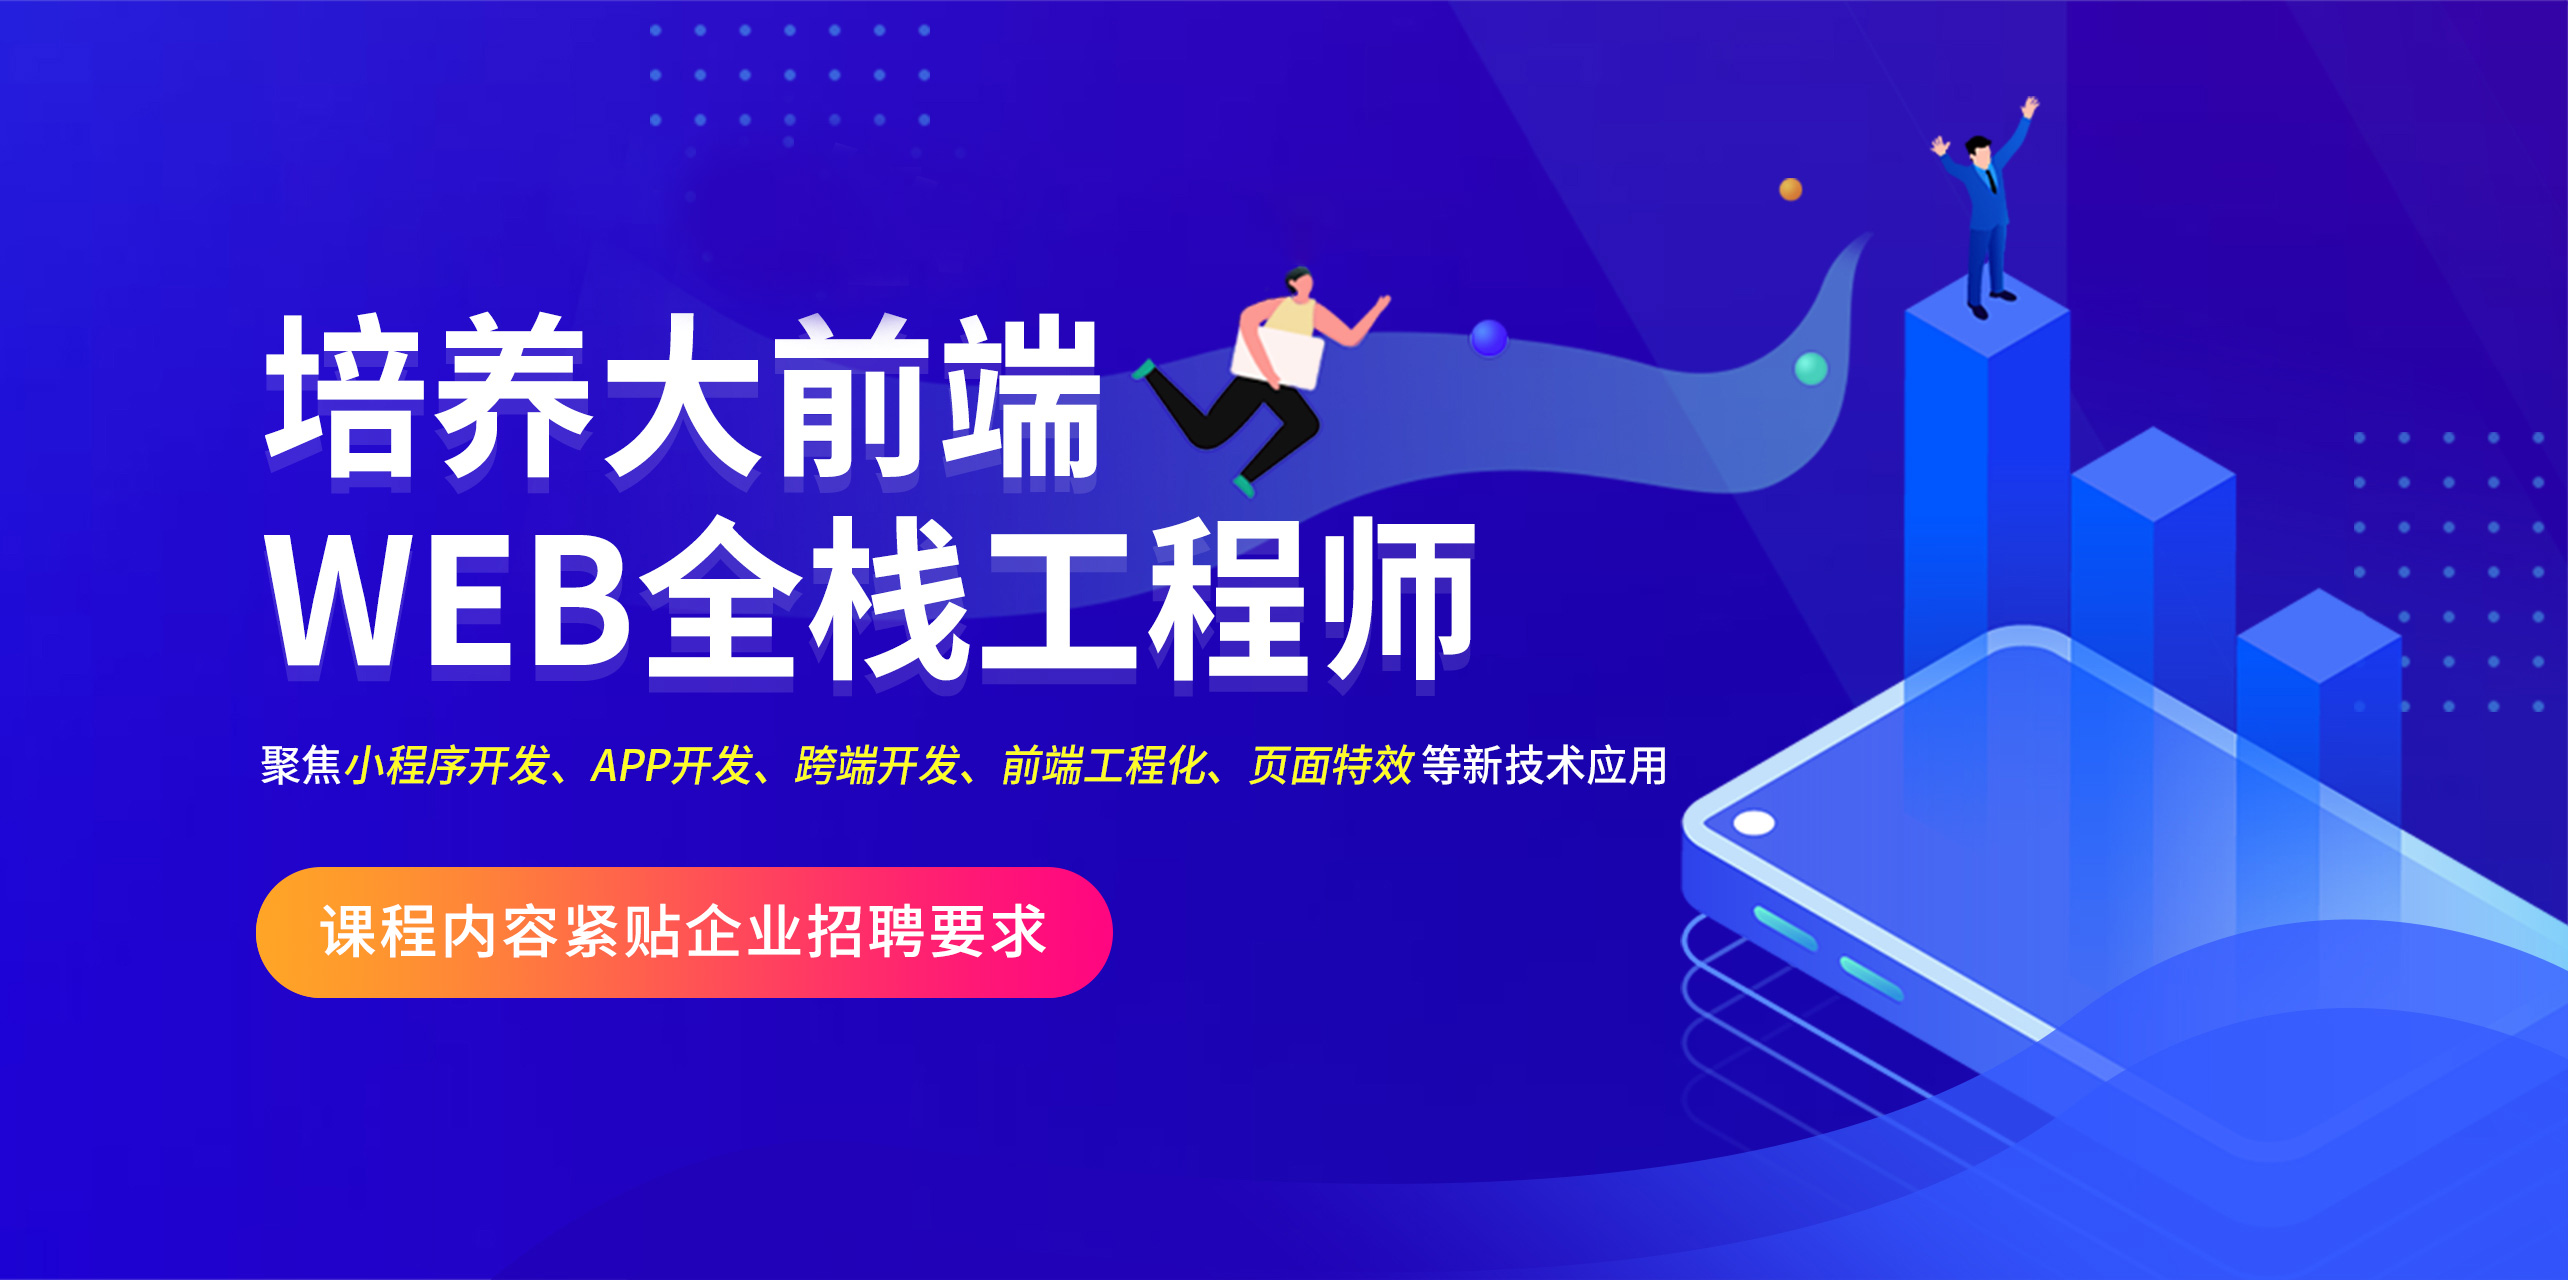 南京Web开发精品培训班-南京前端Web开发精品培训班